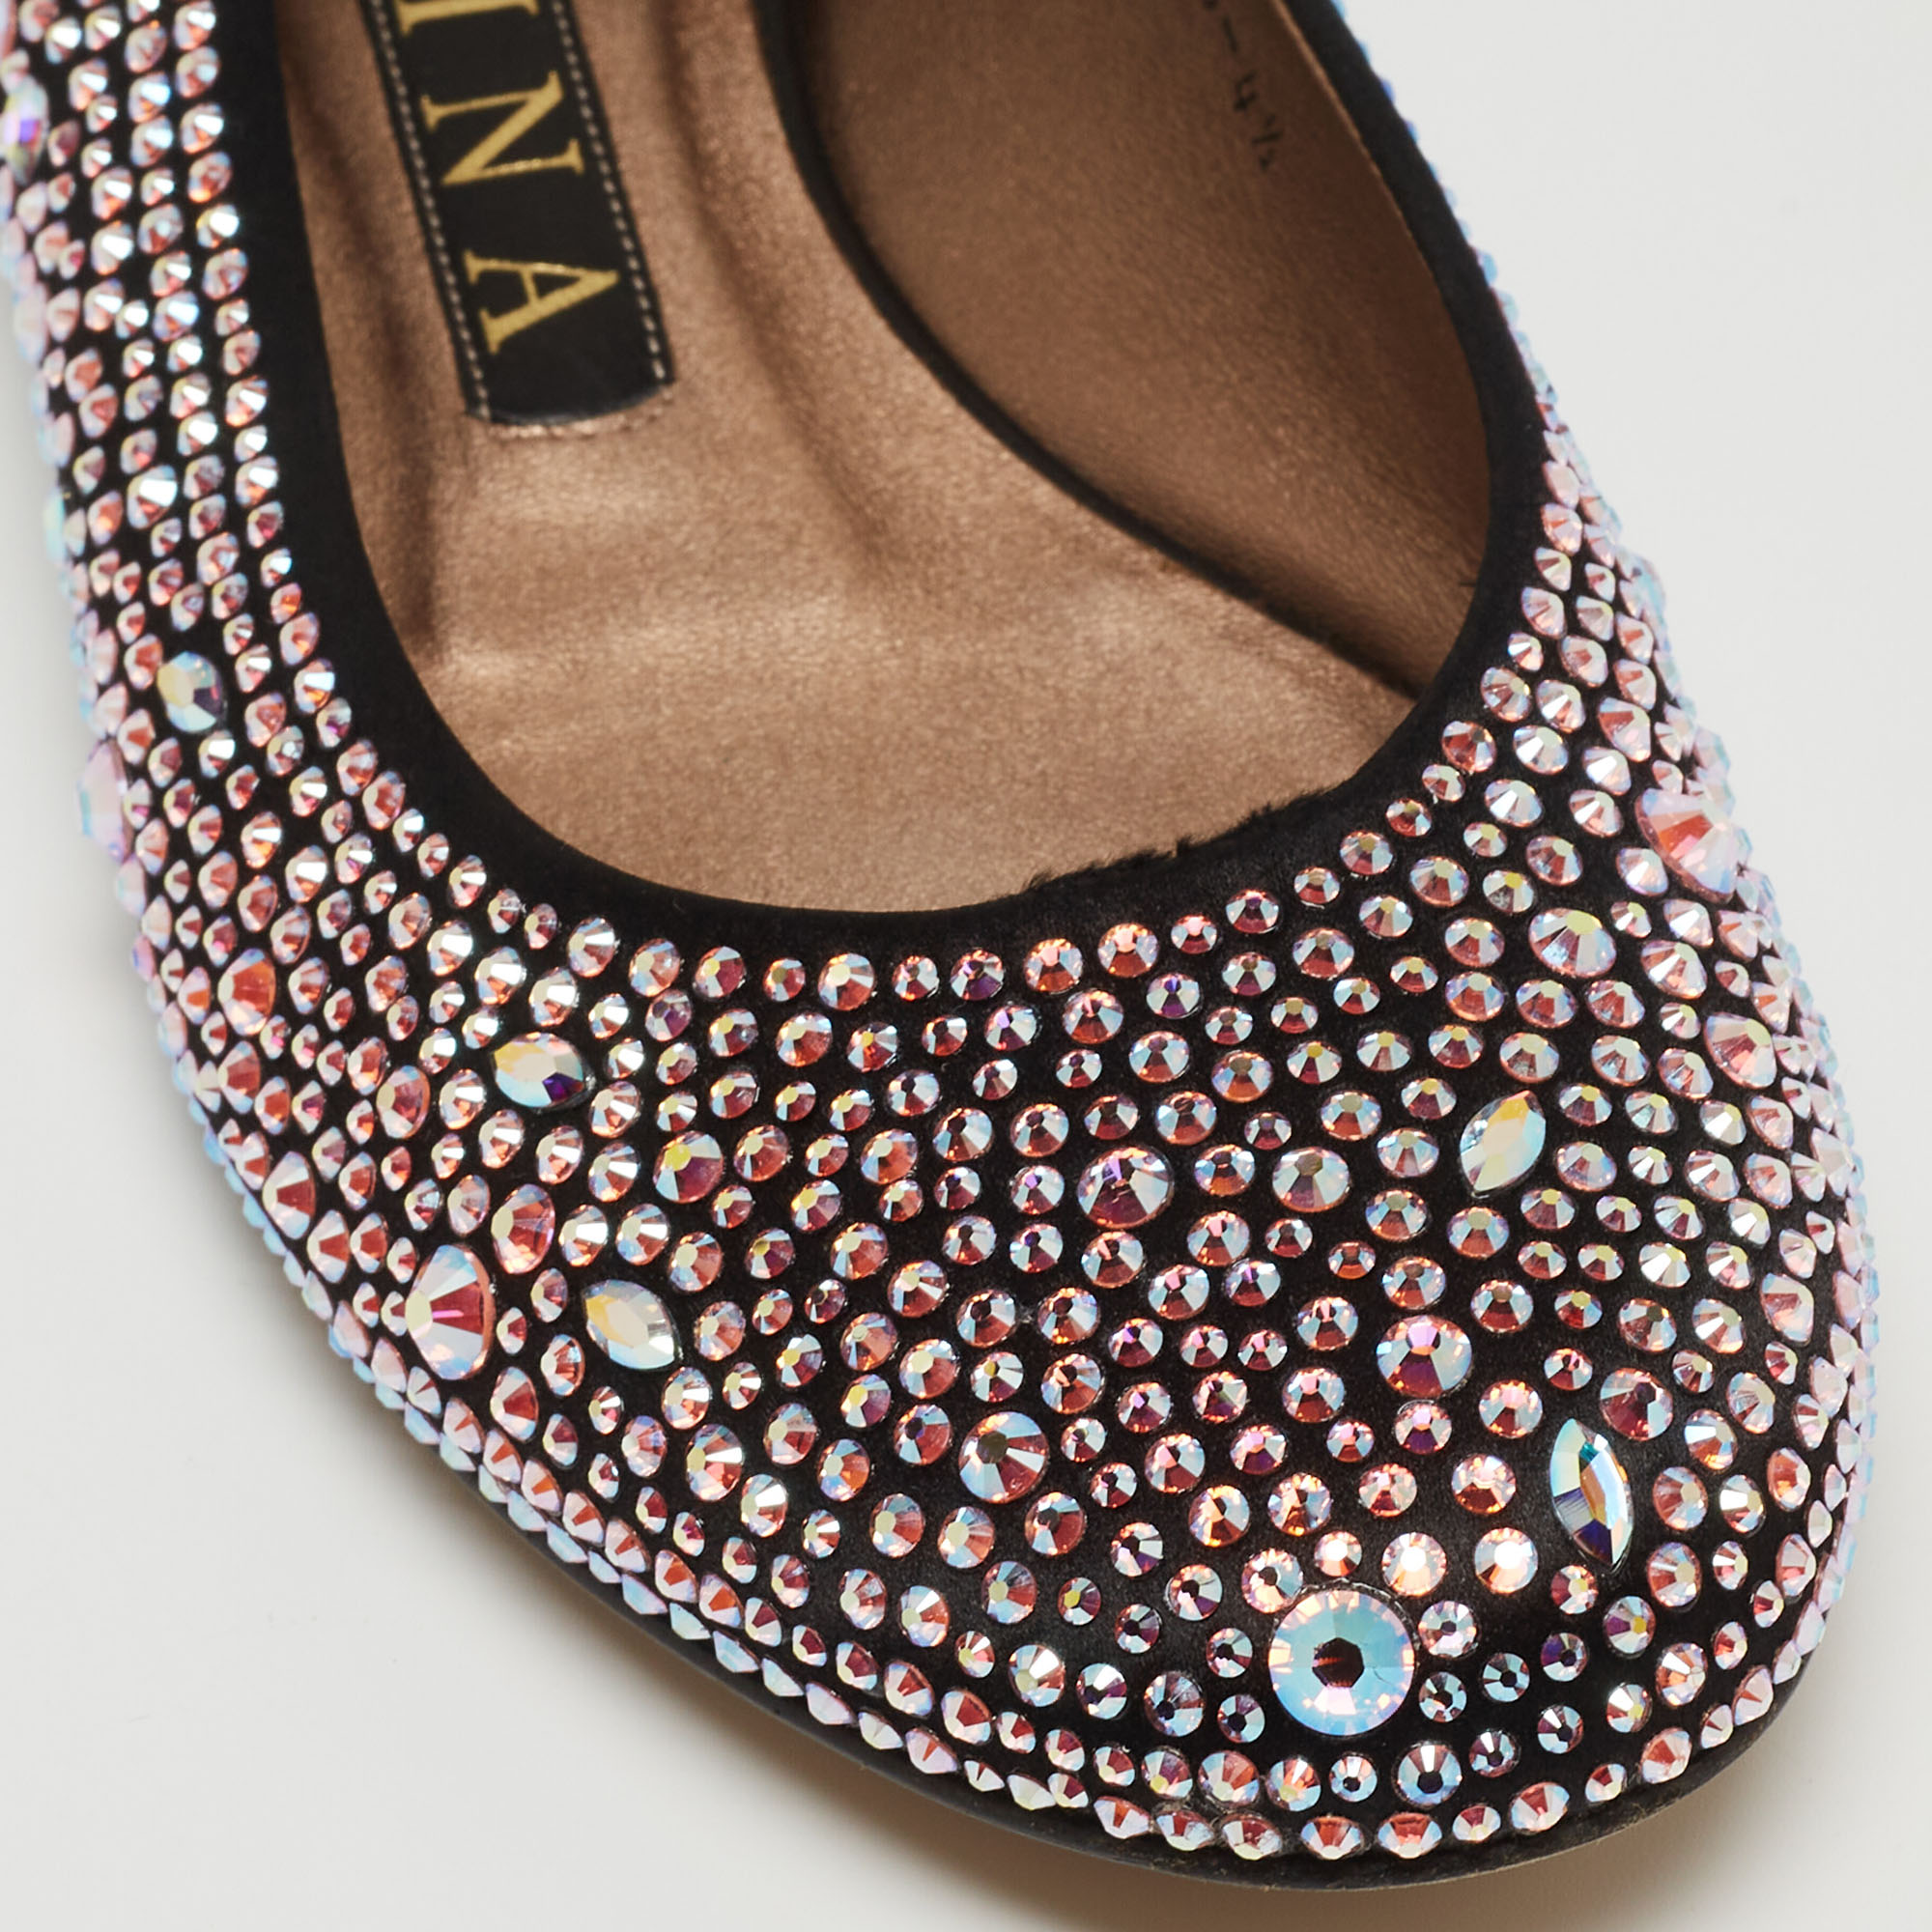 Gina Black/Pink Crystal Embellished Satin Ballet Flats Size 37.5